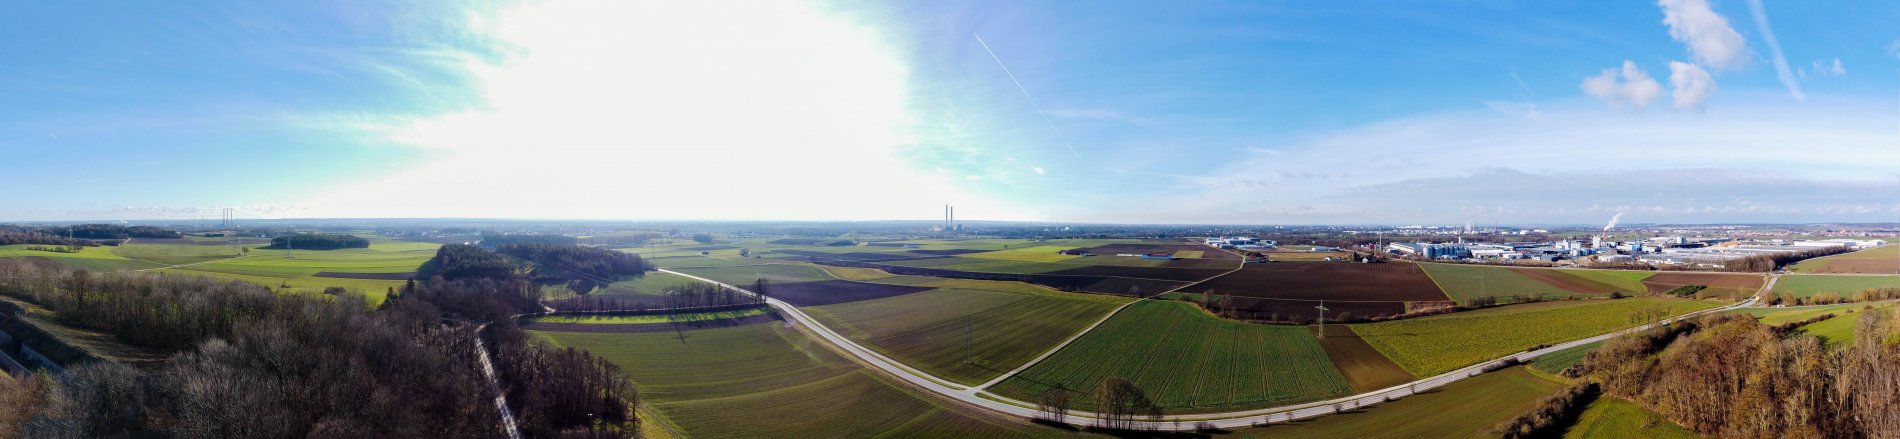 Панорама На Ингольштадт издалека